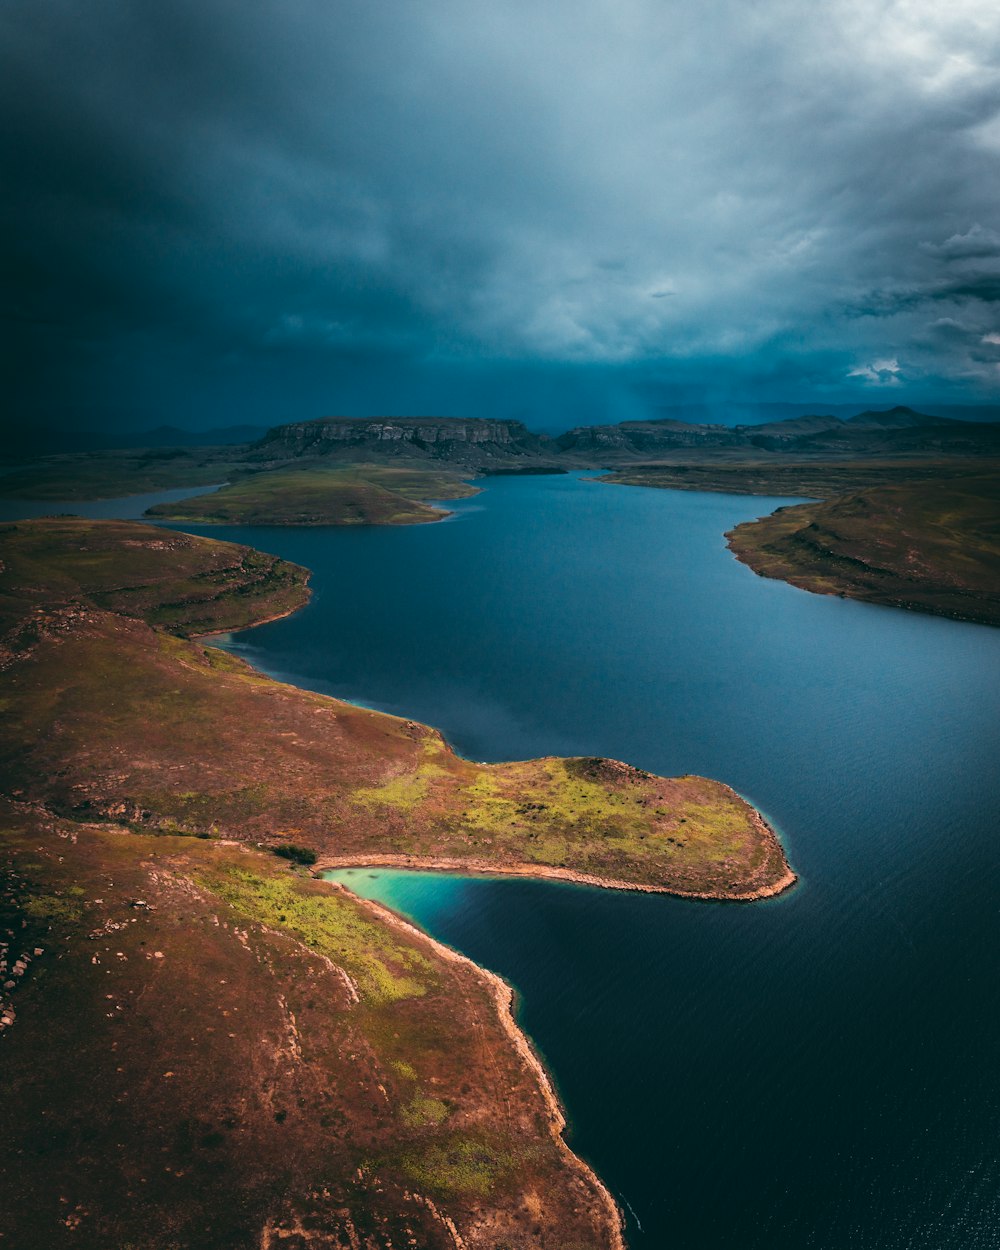 Fotografía aérea de un cuerpo de agua con un campo marrón y verde bajo nubes dramáticas